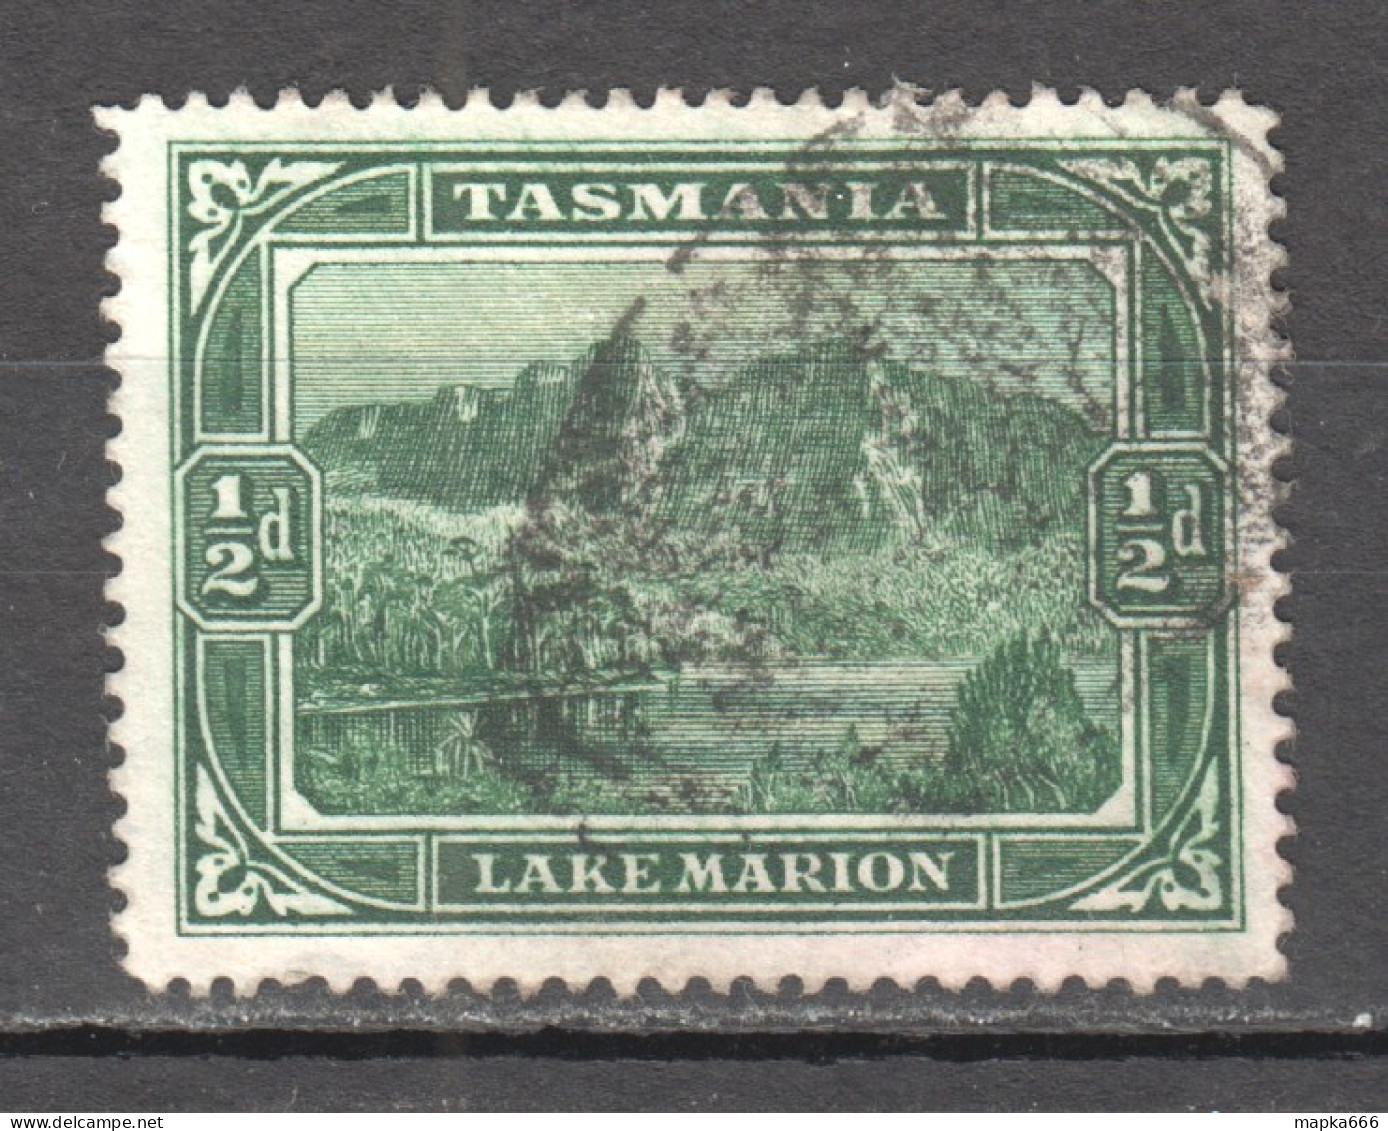 Tas174 1899 Australia Tasmania Lake Marion Gibbons Sg #229 1St Used - Used Stamps